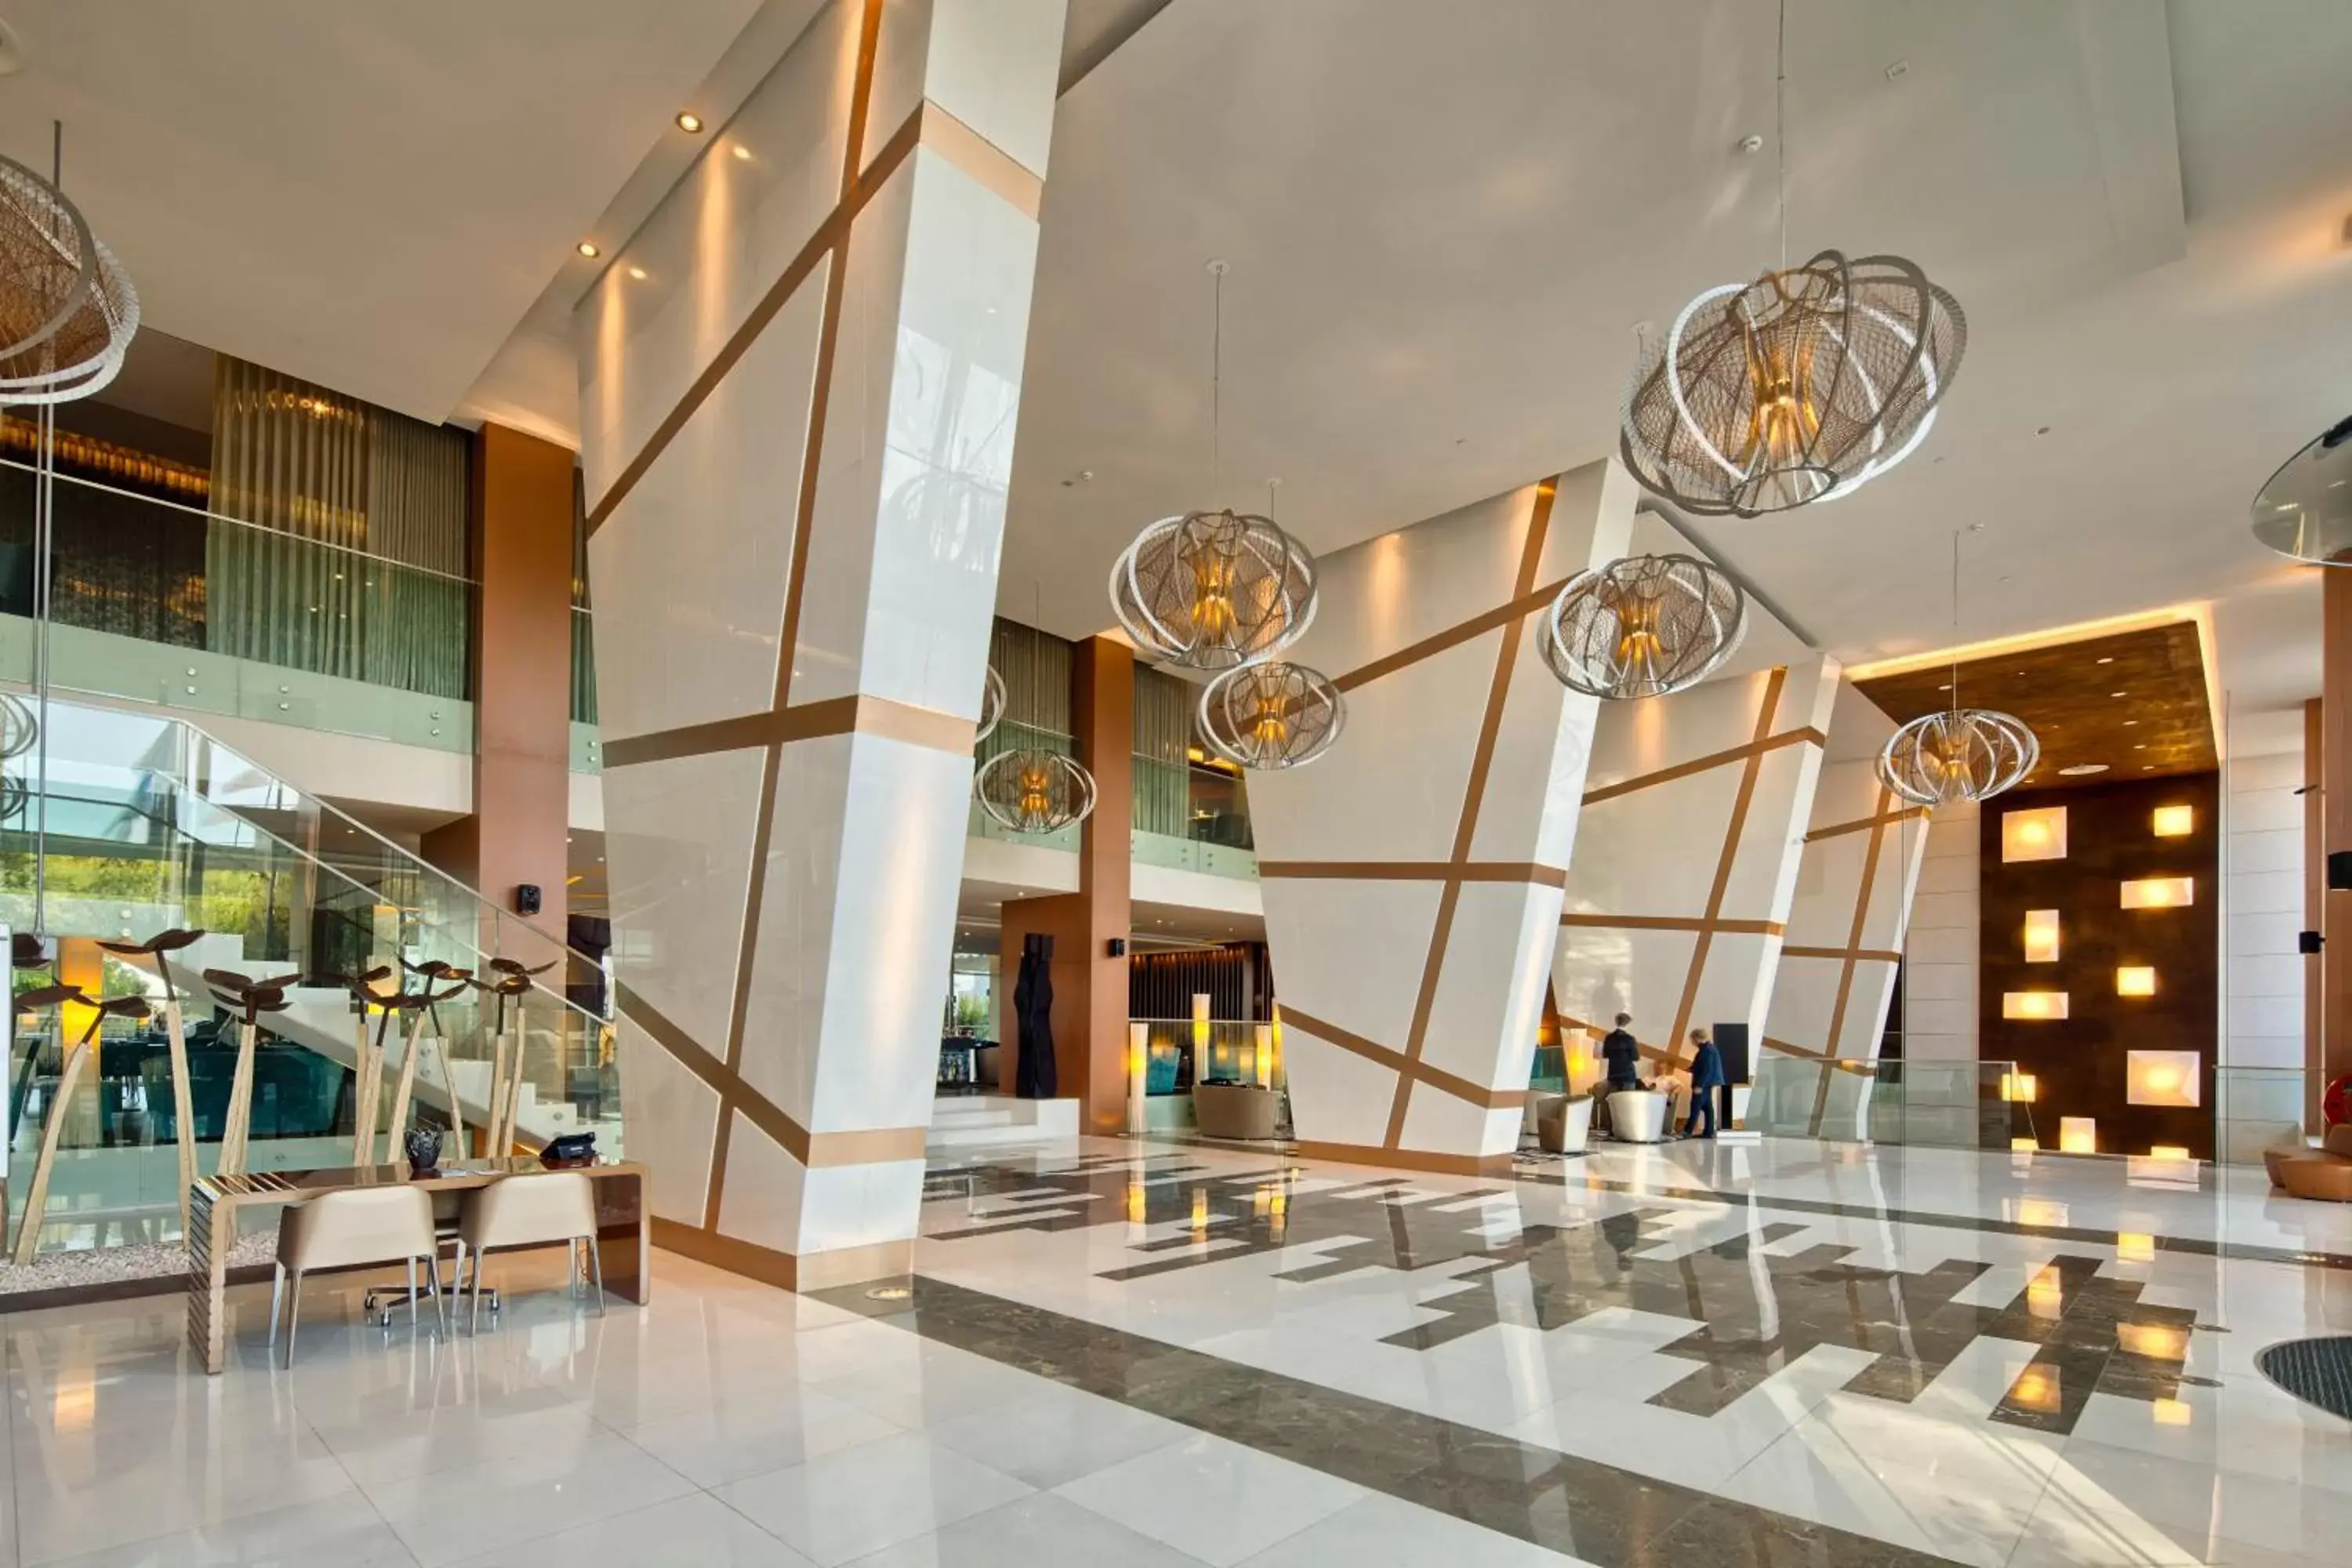 Lobby or reception, Lobby/Reception in EPIC SANA Lisboa Hotel